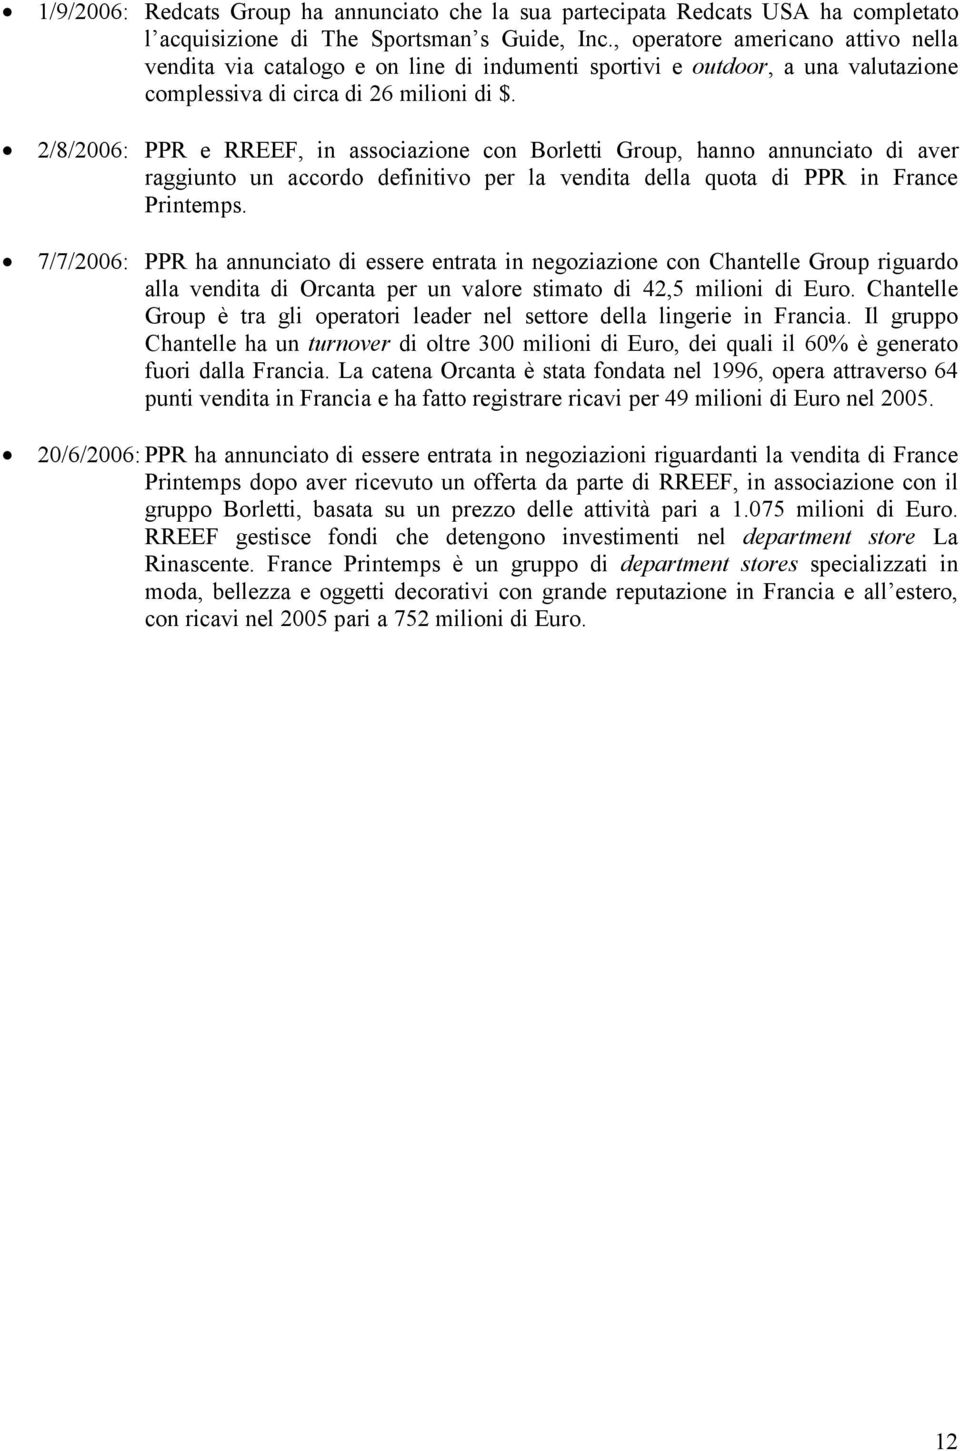 2/8/2006: PPR e RREEF, in associazione con Borletti Group, hanno annunciato di aver raggiunto un accordo definitivo per la vendita della quota di PPR in France Printemps.